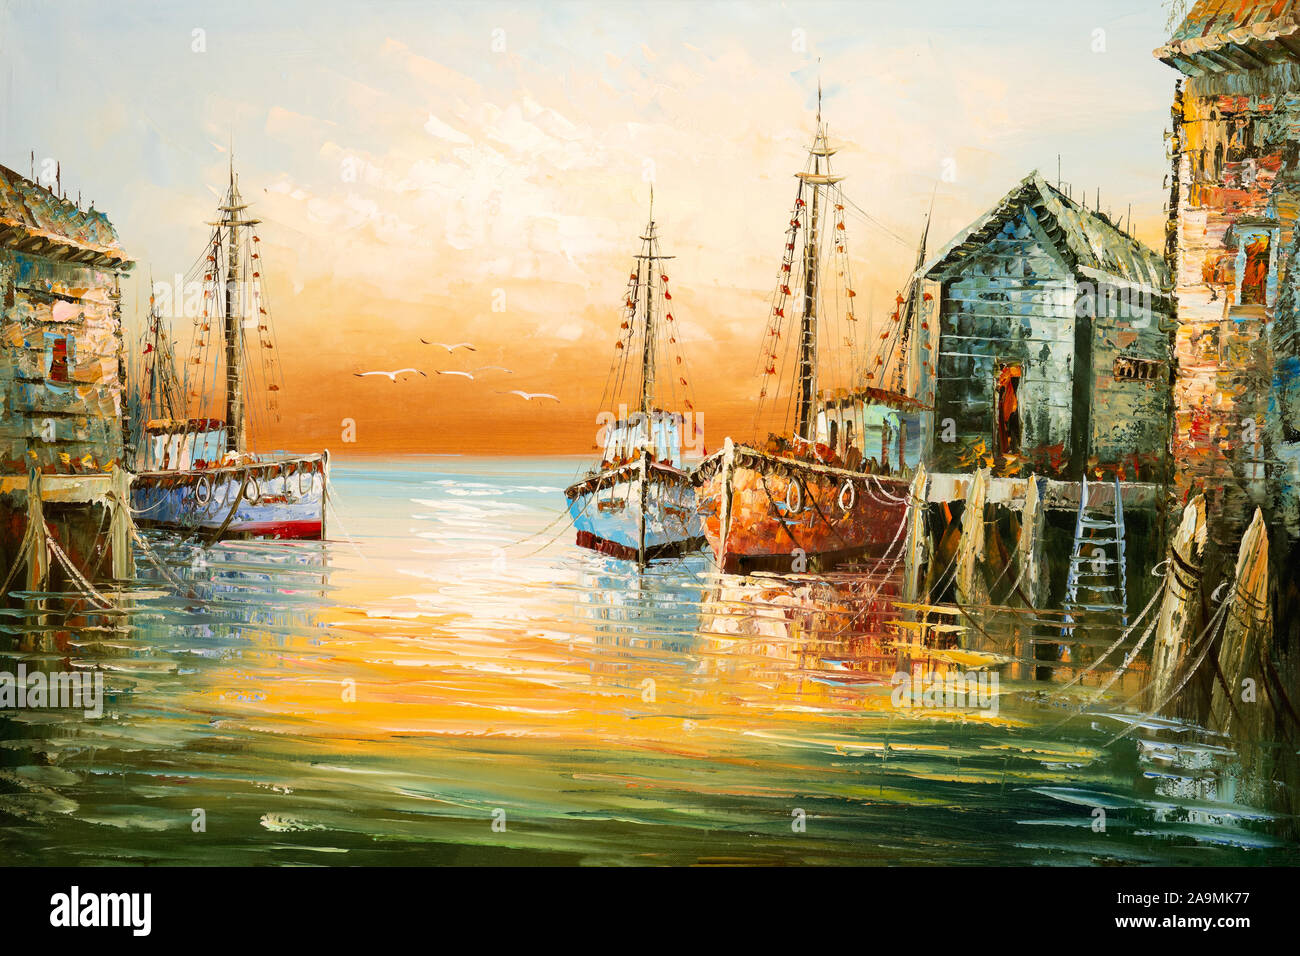 Immagine della pittura con spessa pennellata di vernice e una spatola che illustra i dettagli di barche di pescatori e baracche in un porto. Foto Stock